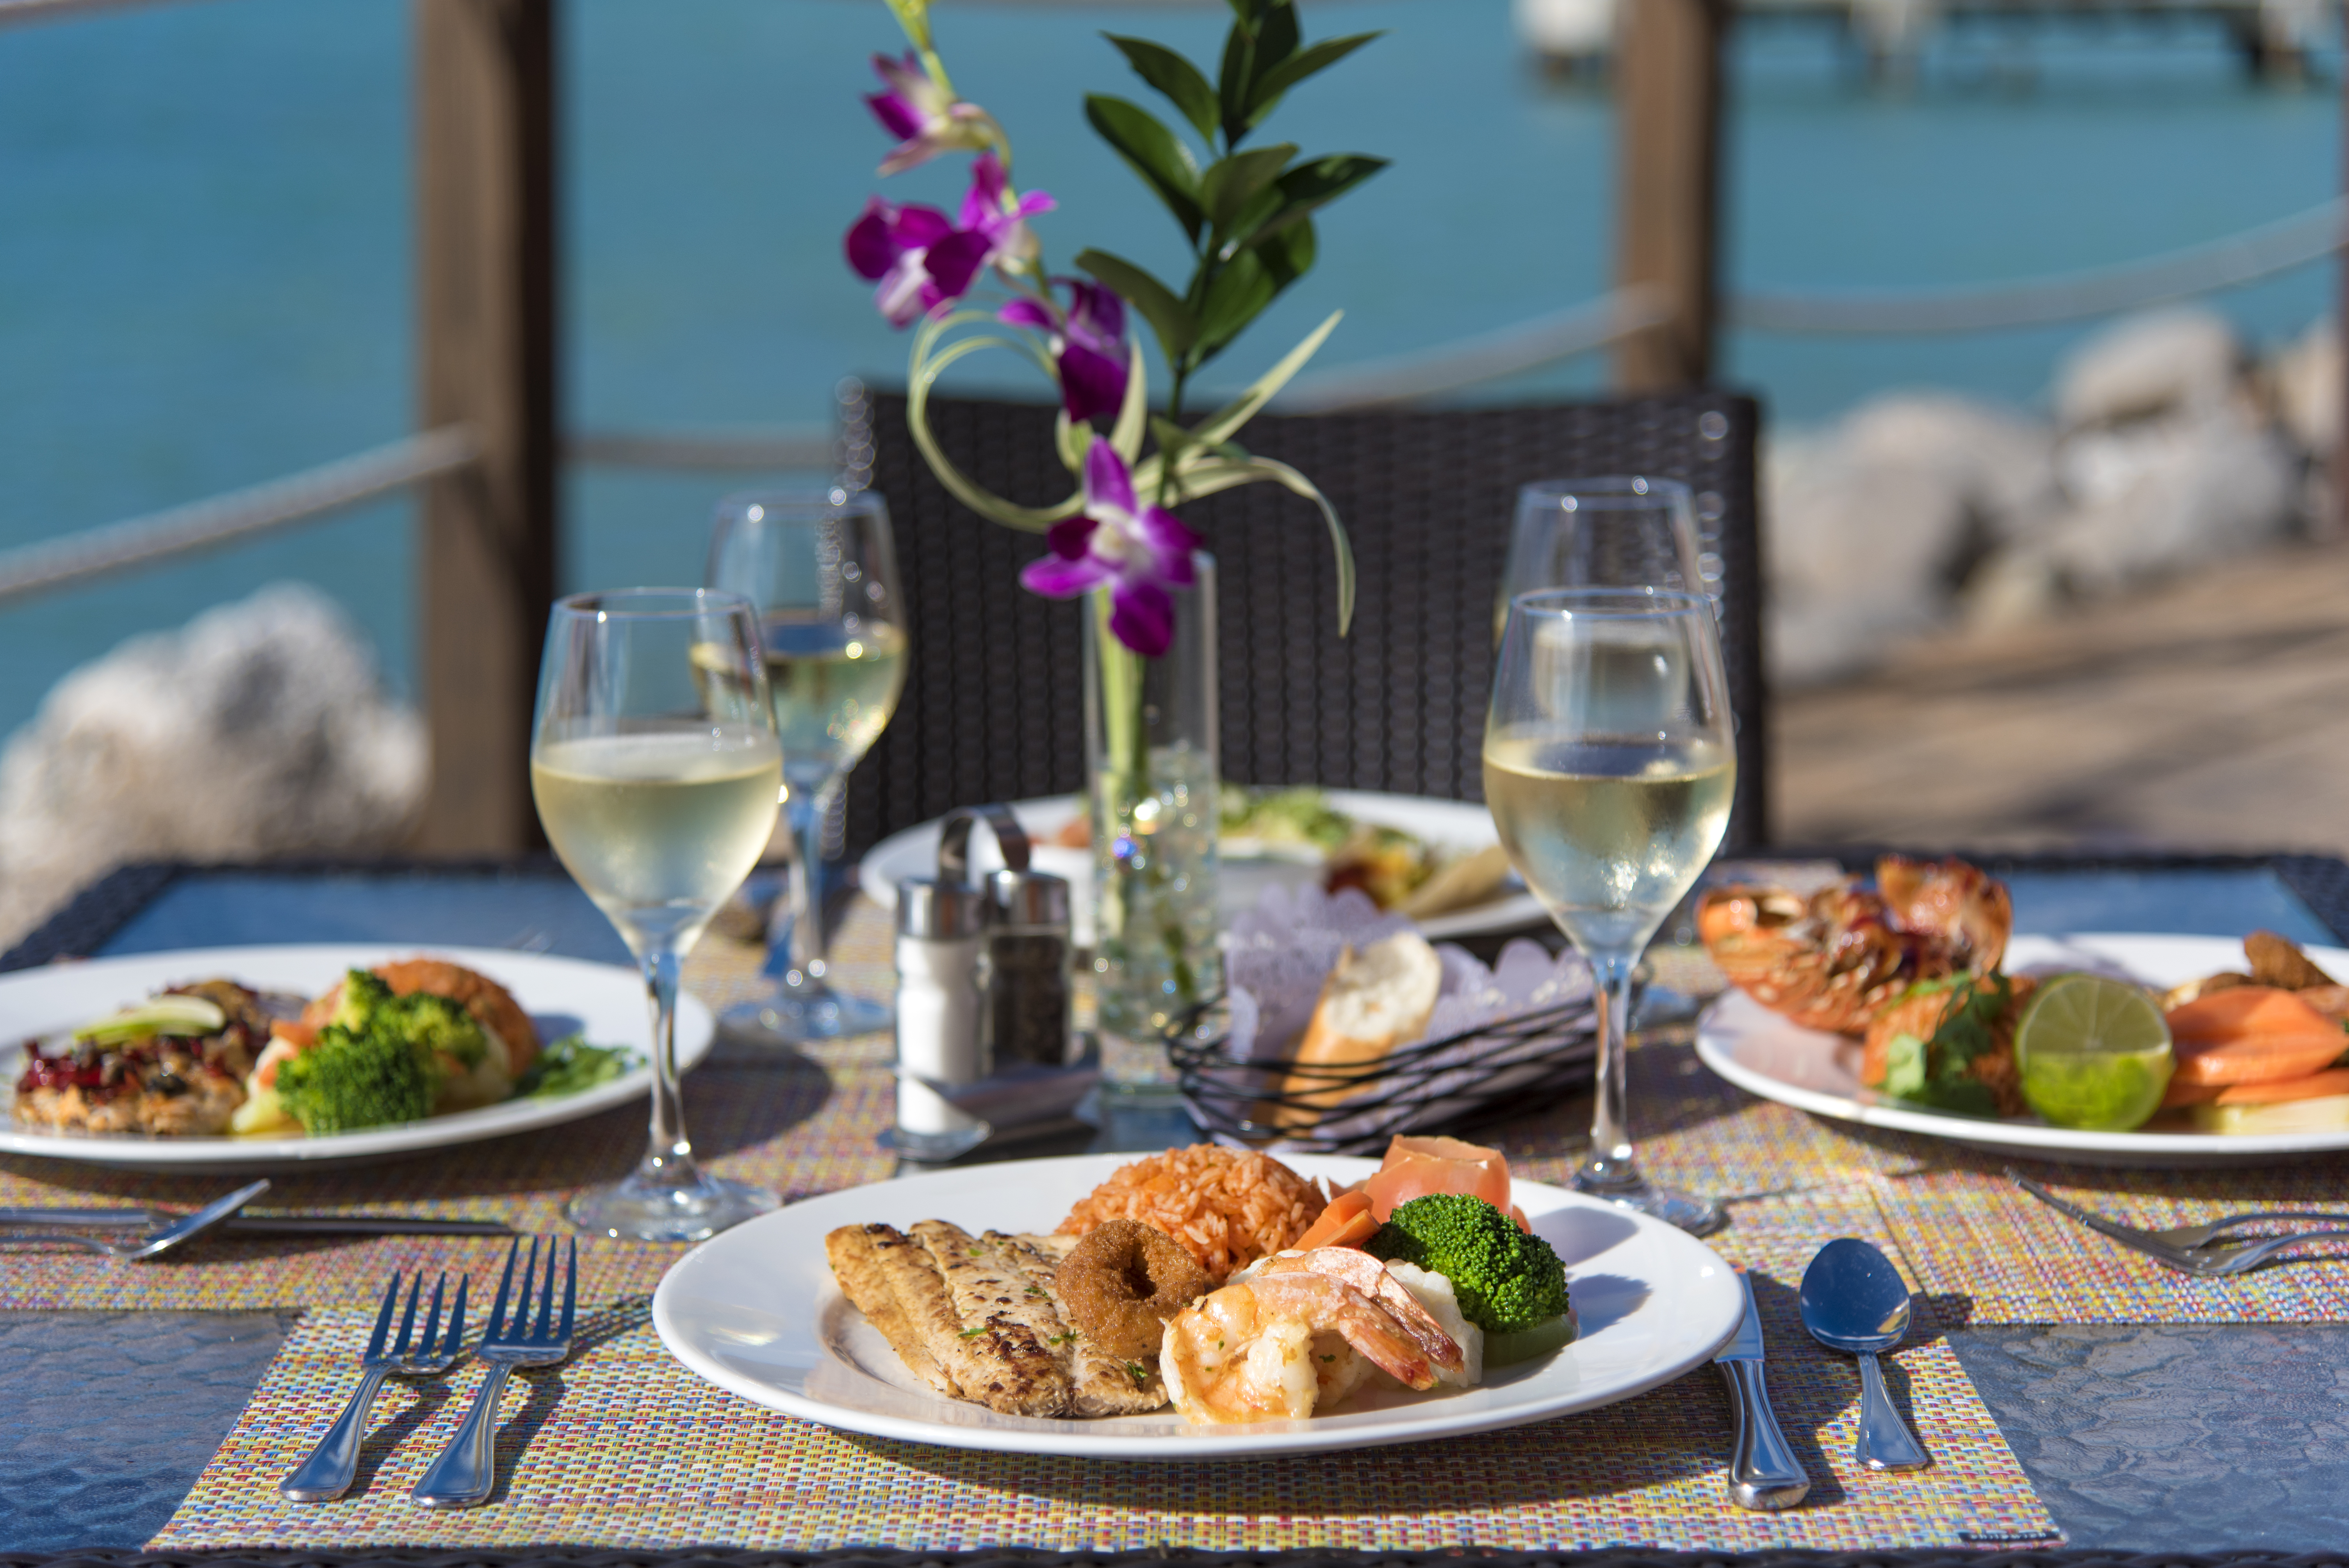 November Manifested as St. Maarten’s Culinary Month Through “St. Maarten Flavors”